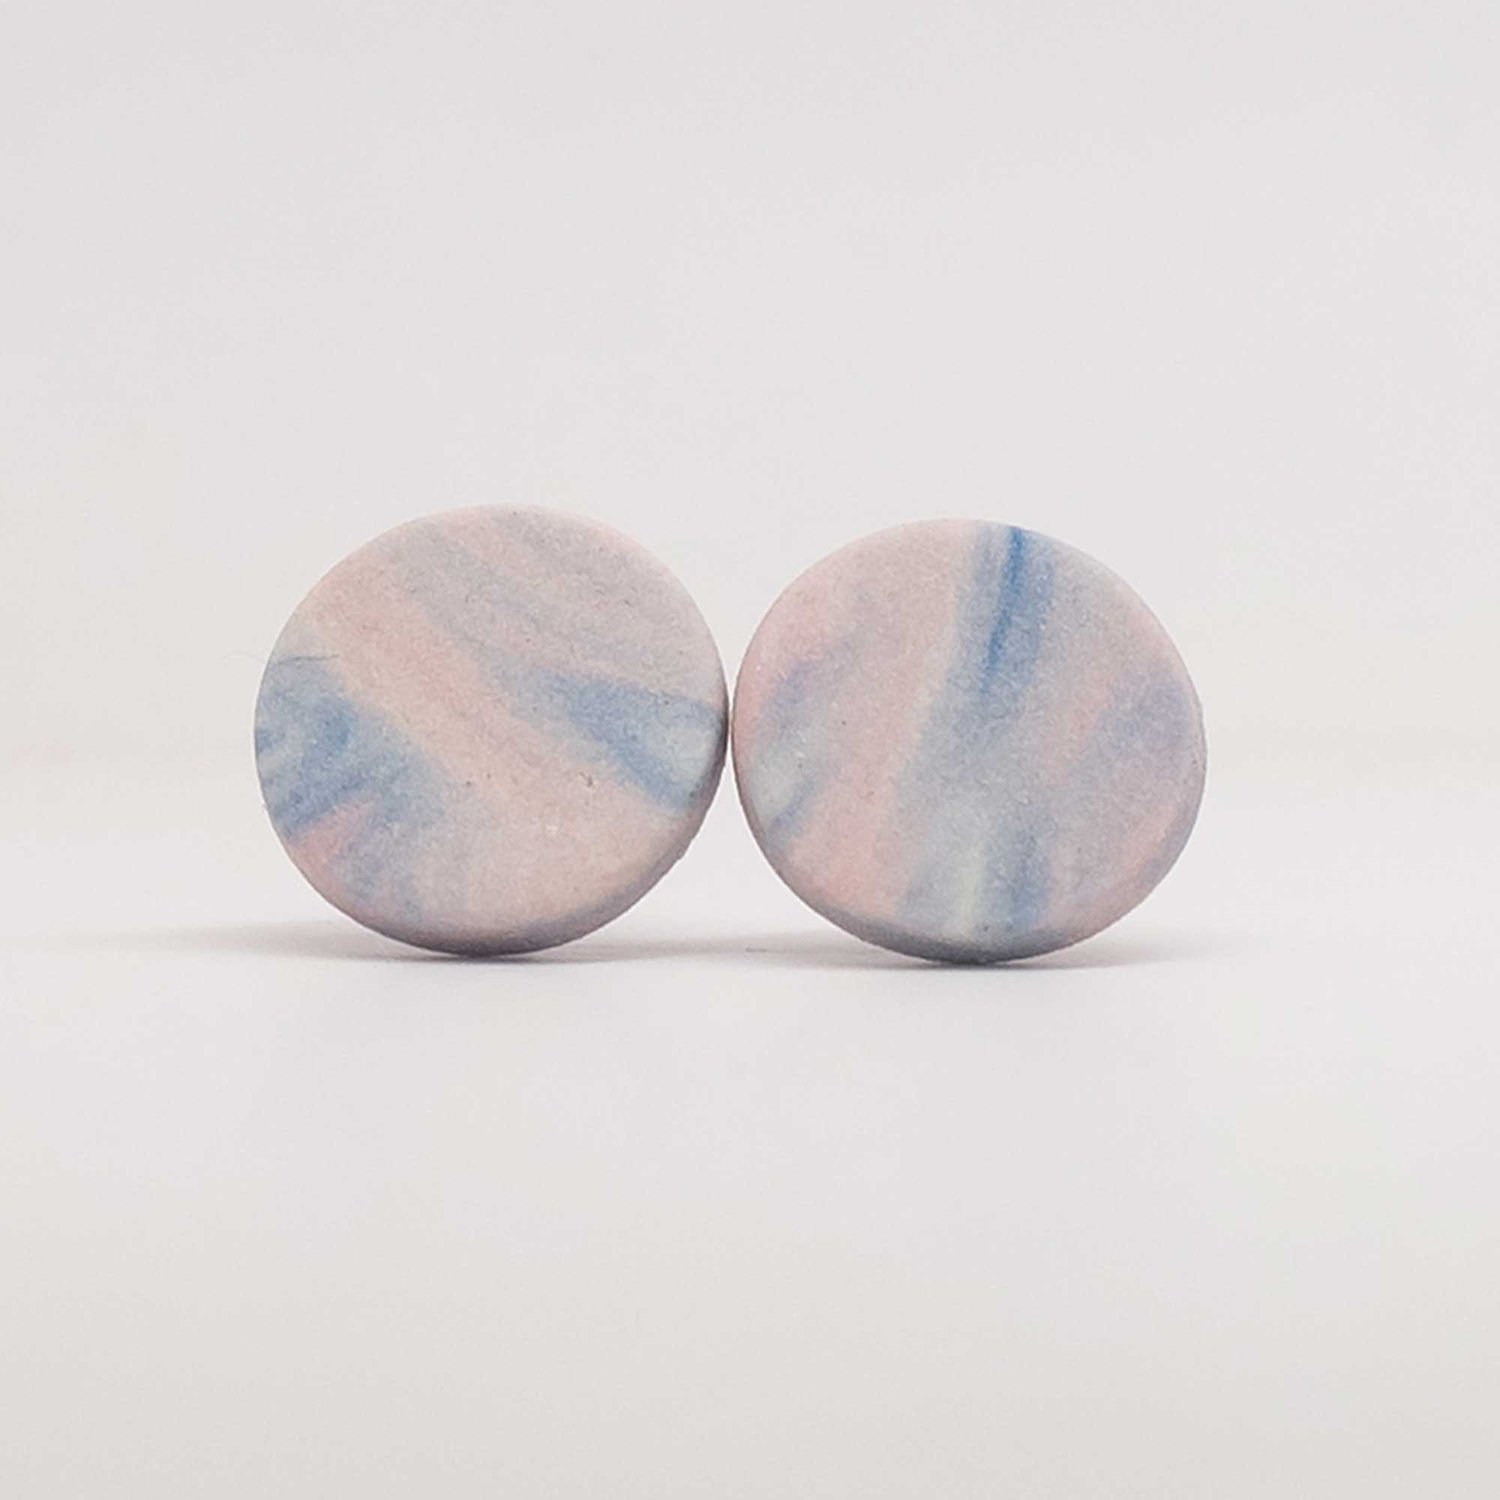 Image of Handmade Australian porcelain stud earrings - soft pink and denim blue swirl